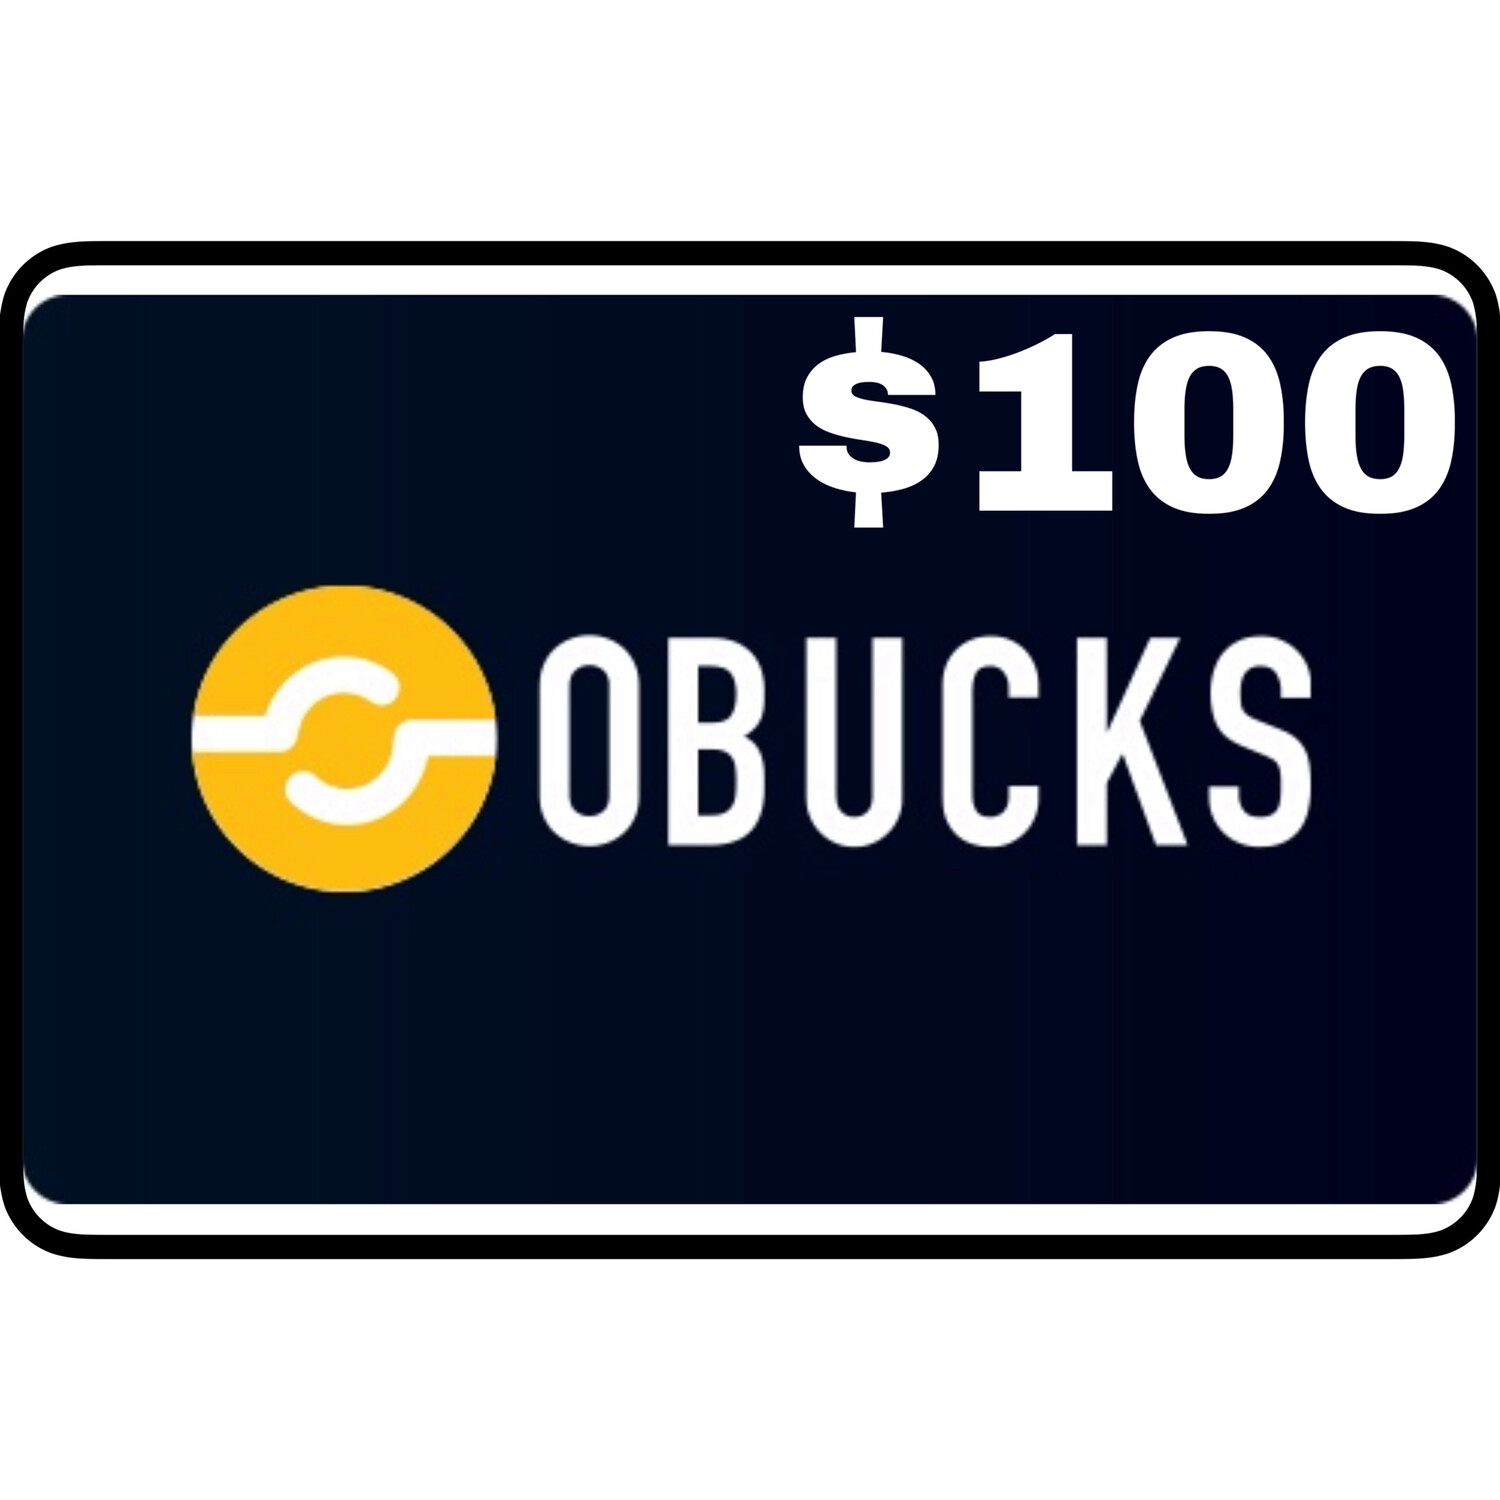 Openbucks Gift Card $100 (Obucks)